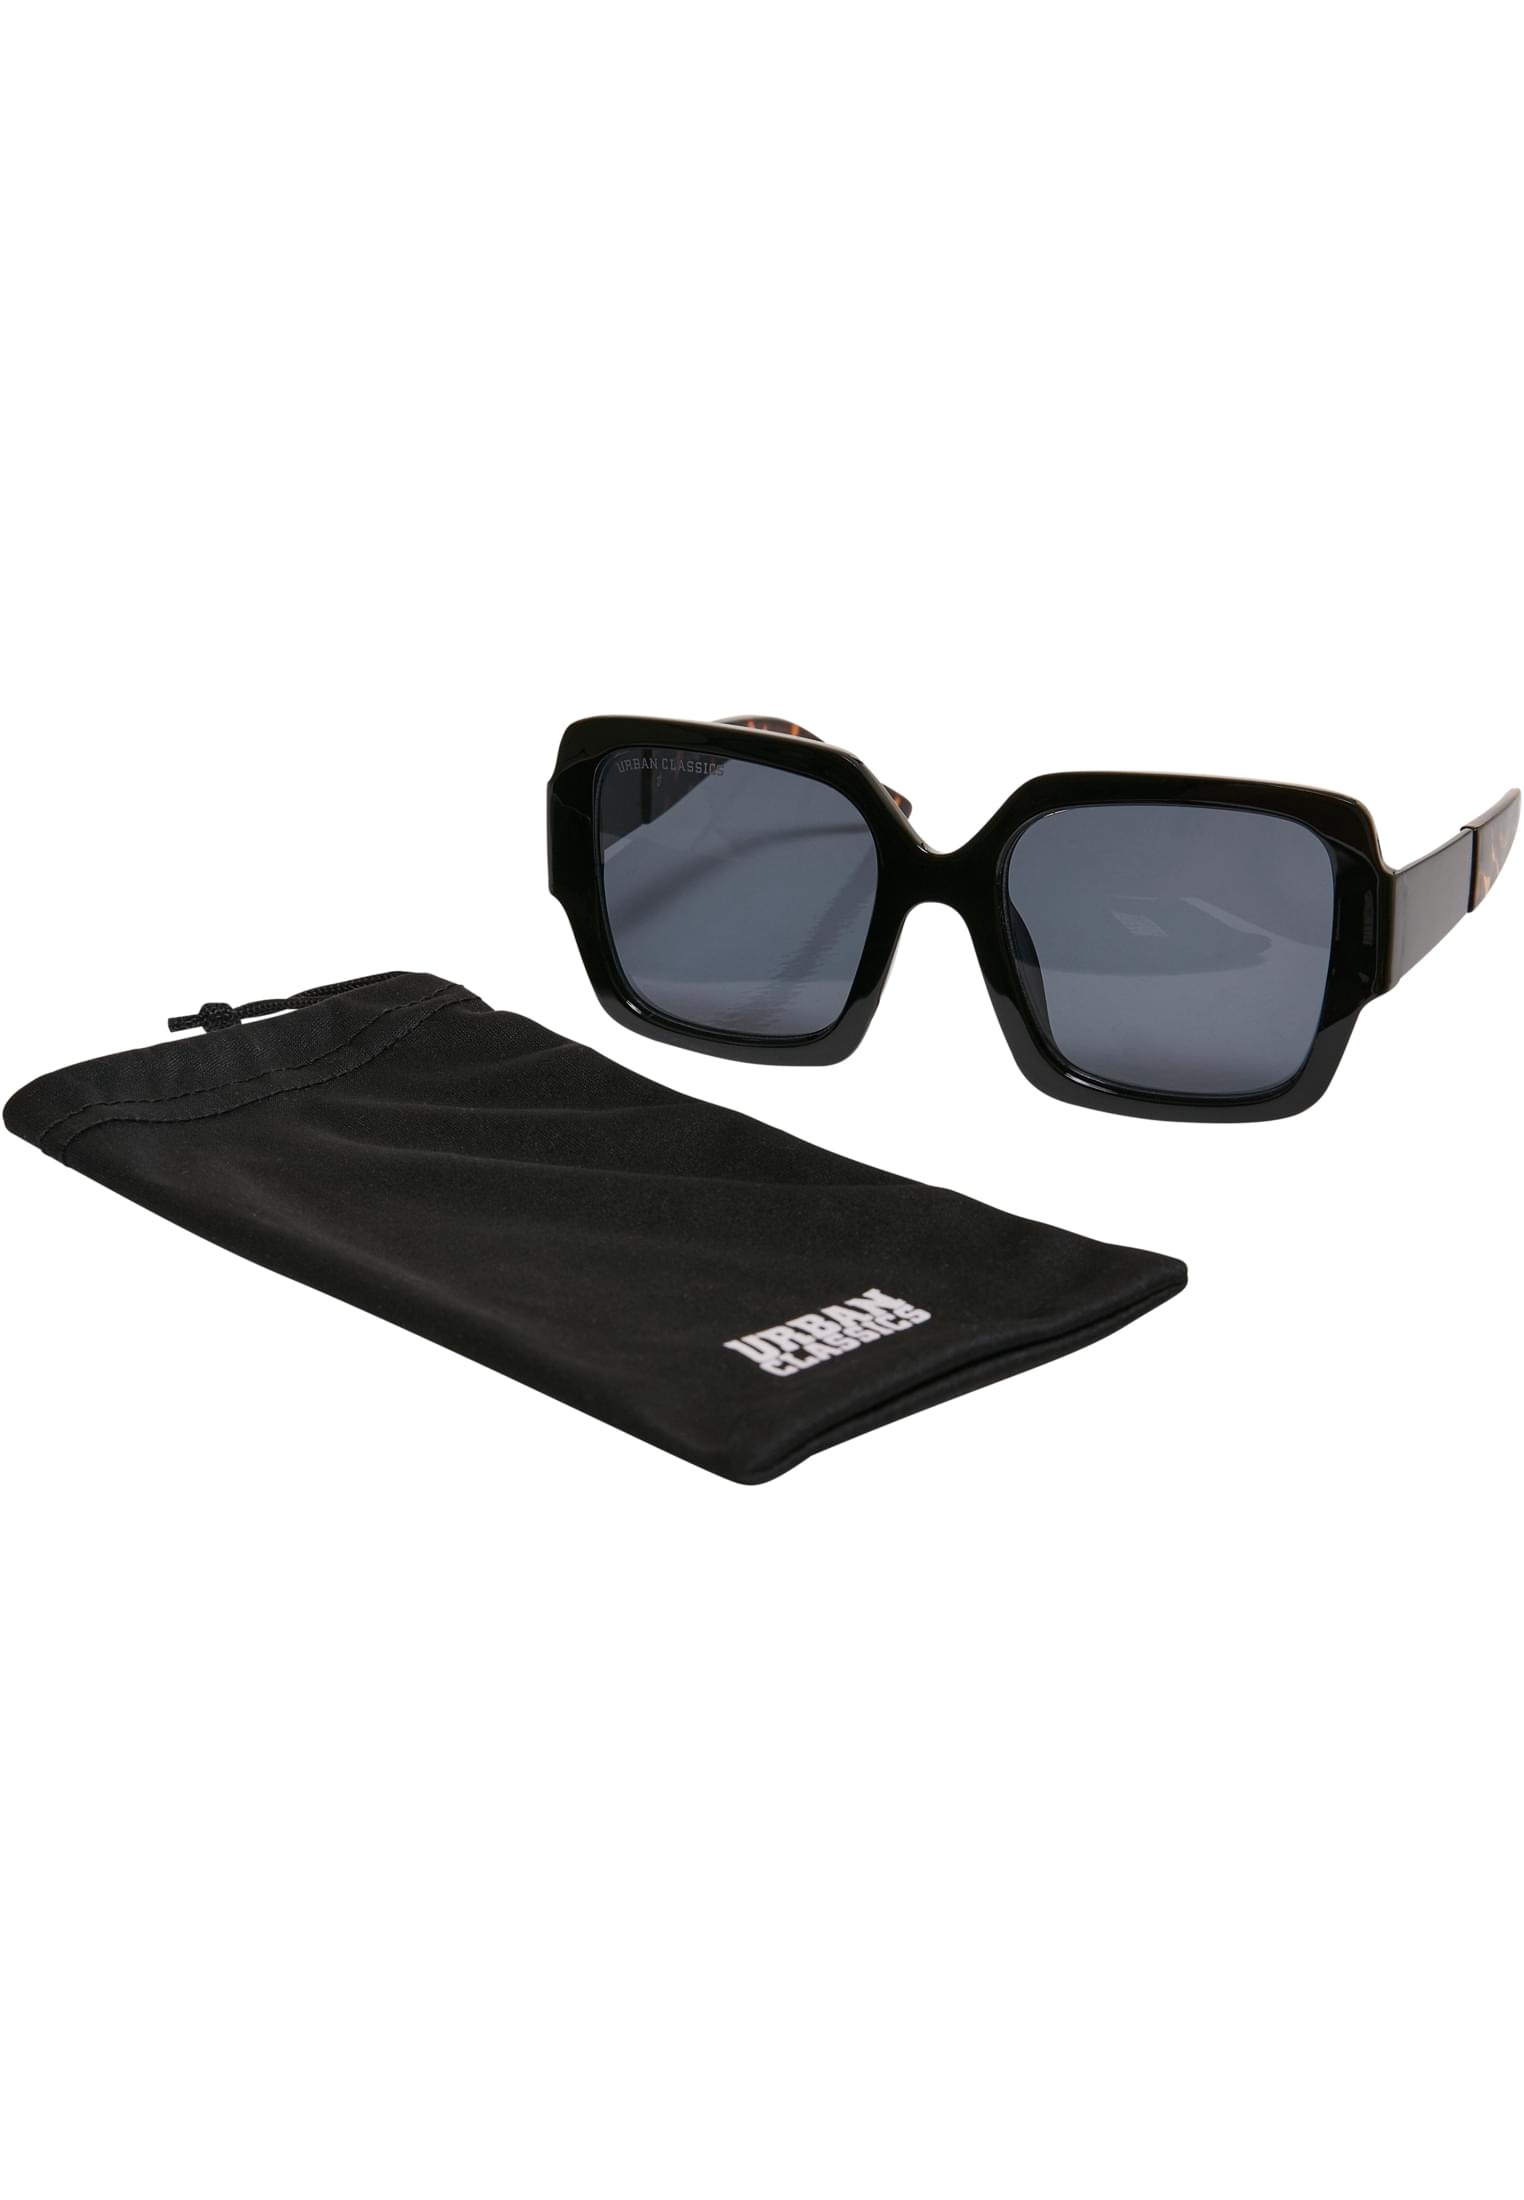 URBAN CLASSICS Sonnenbrille »Unisex BAUR für Sunglasses kaufen Peking« 